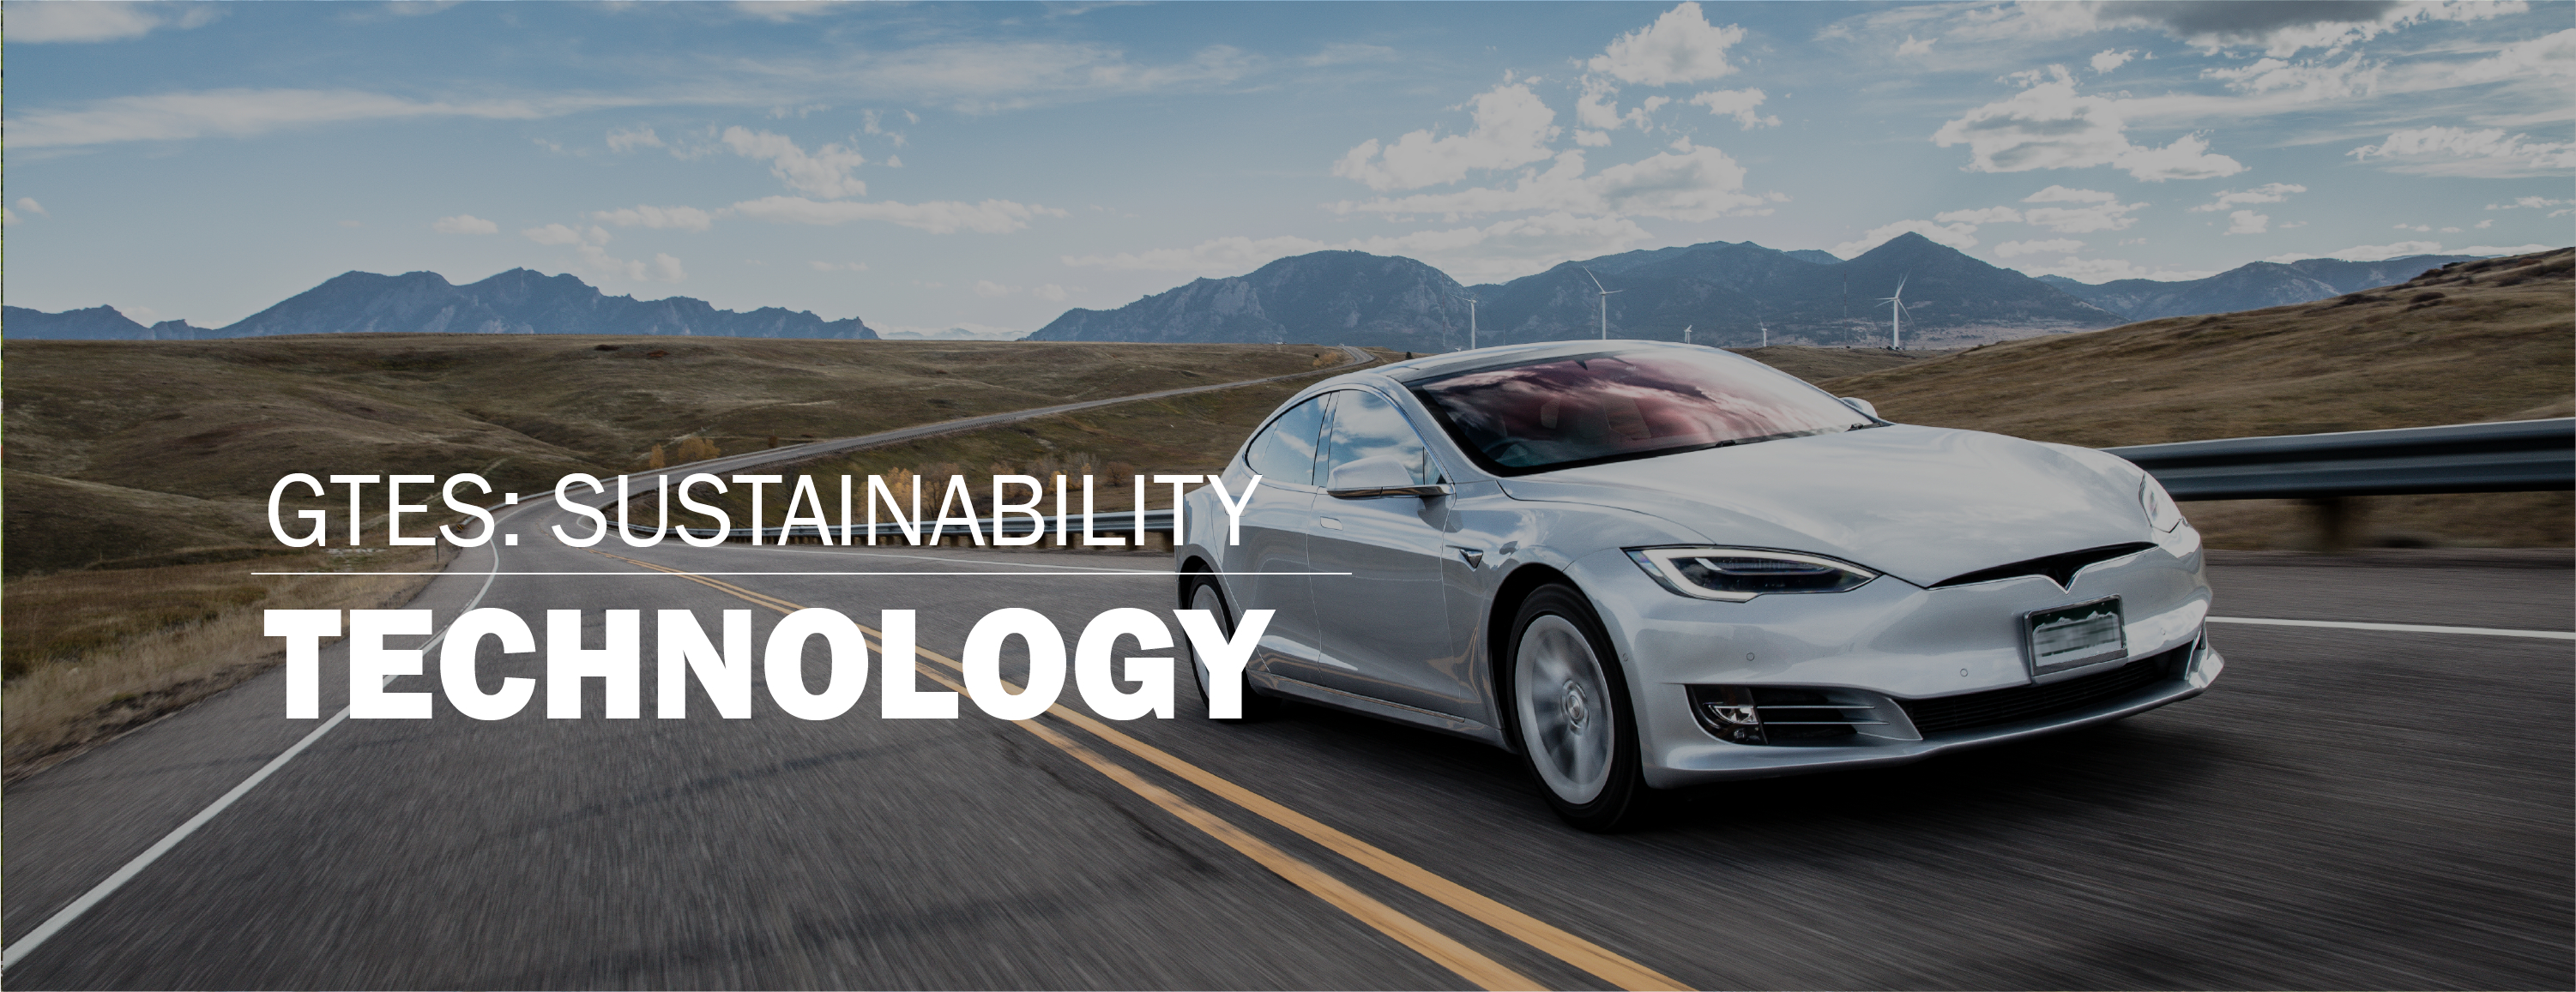 sustainability-technology